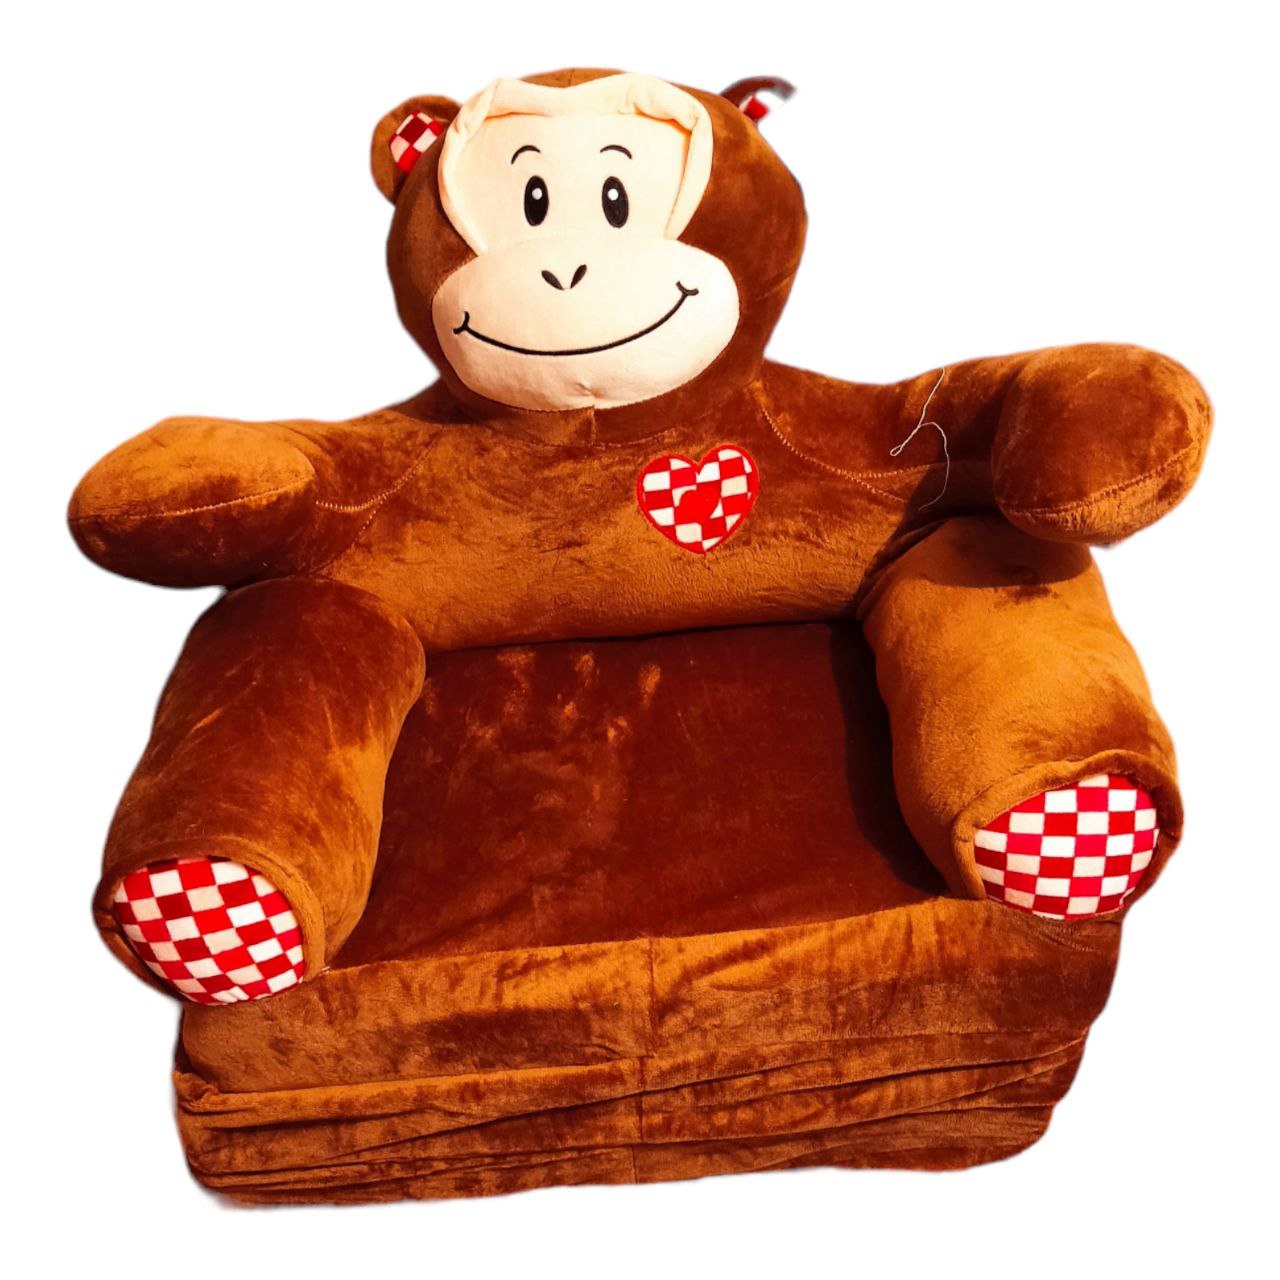  مدل مبل کودک مدل تختخواب شو طرح میمون